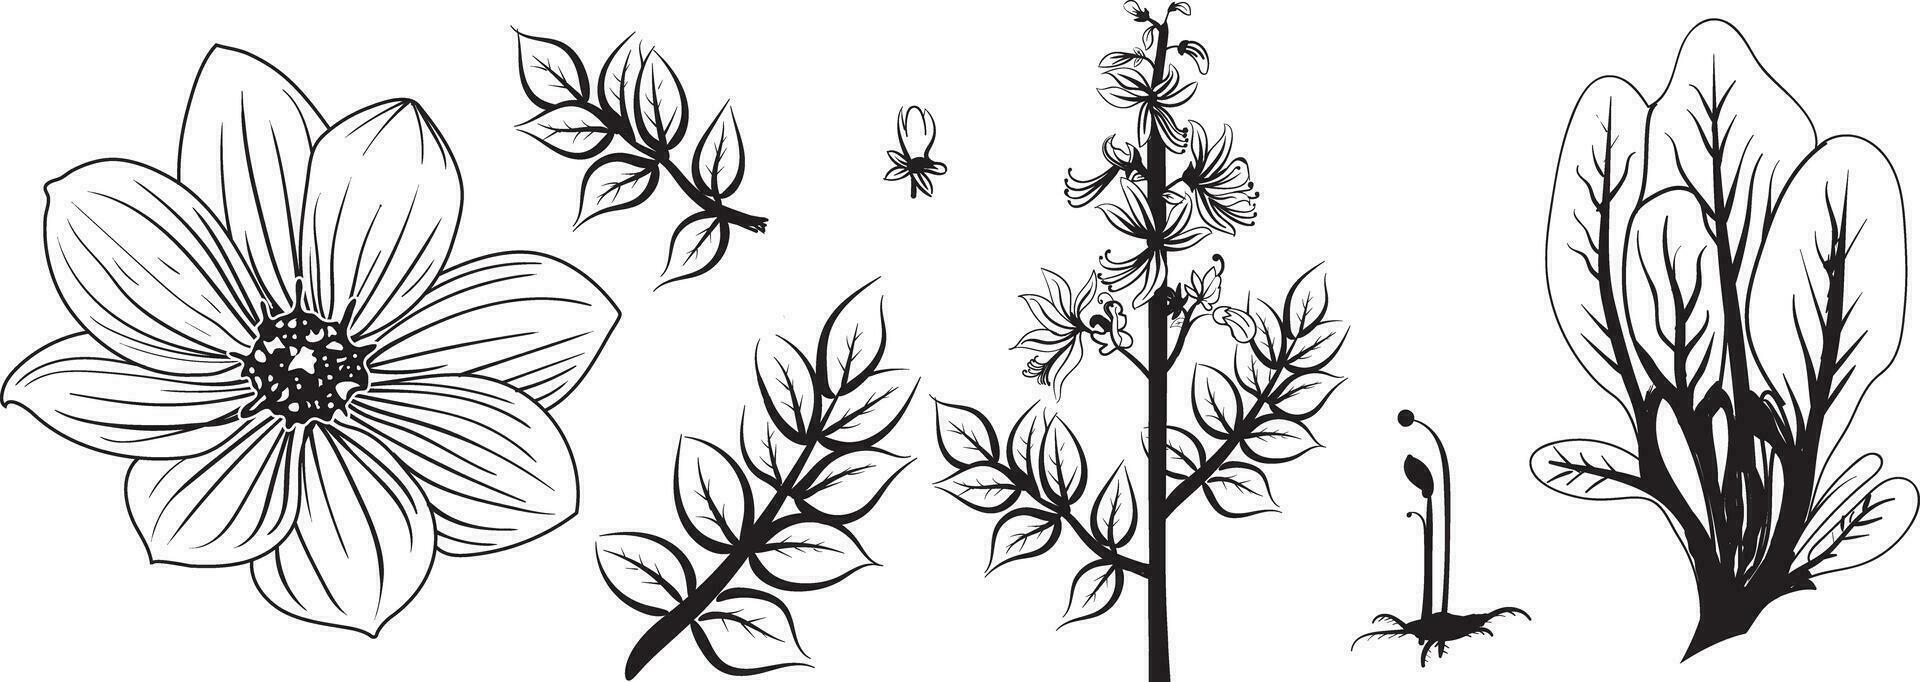 botanico linea arte, floreale ramo e minimalista fiori per logo o tatuaggio. mano disegnato linea nozze erba, elegante le foglie vettore